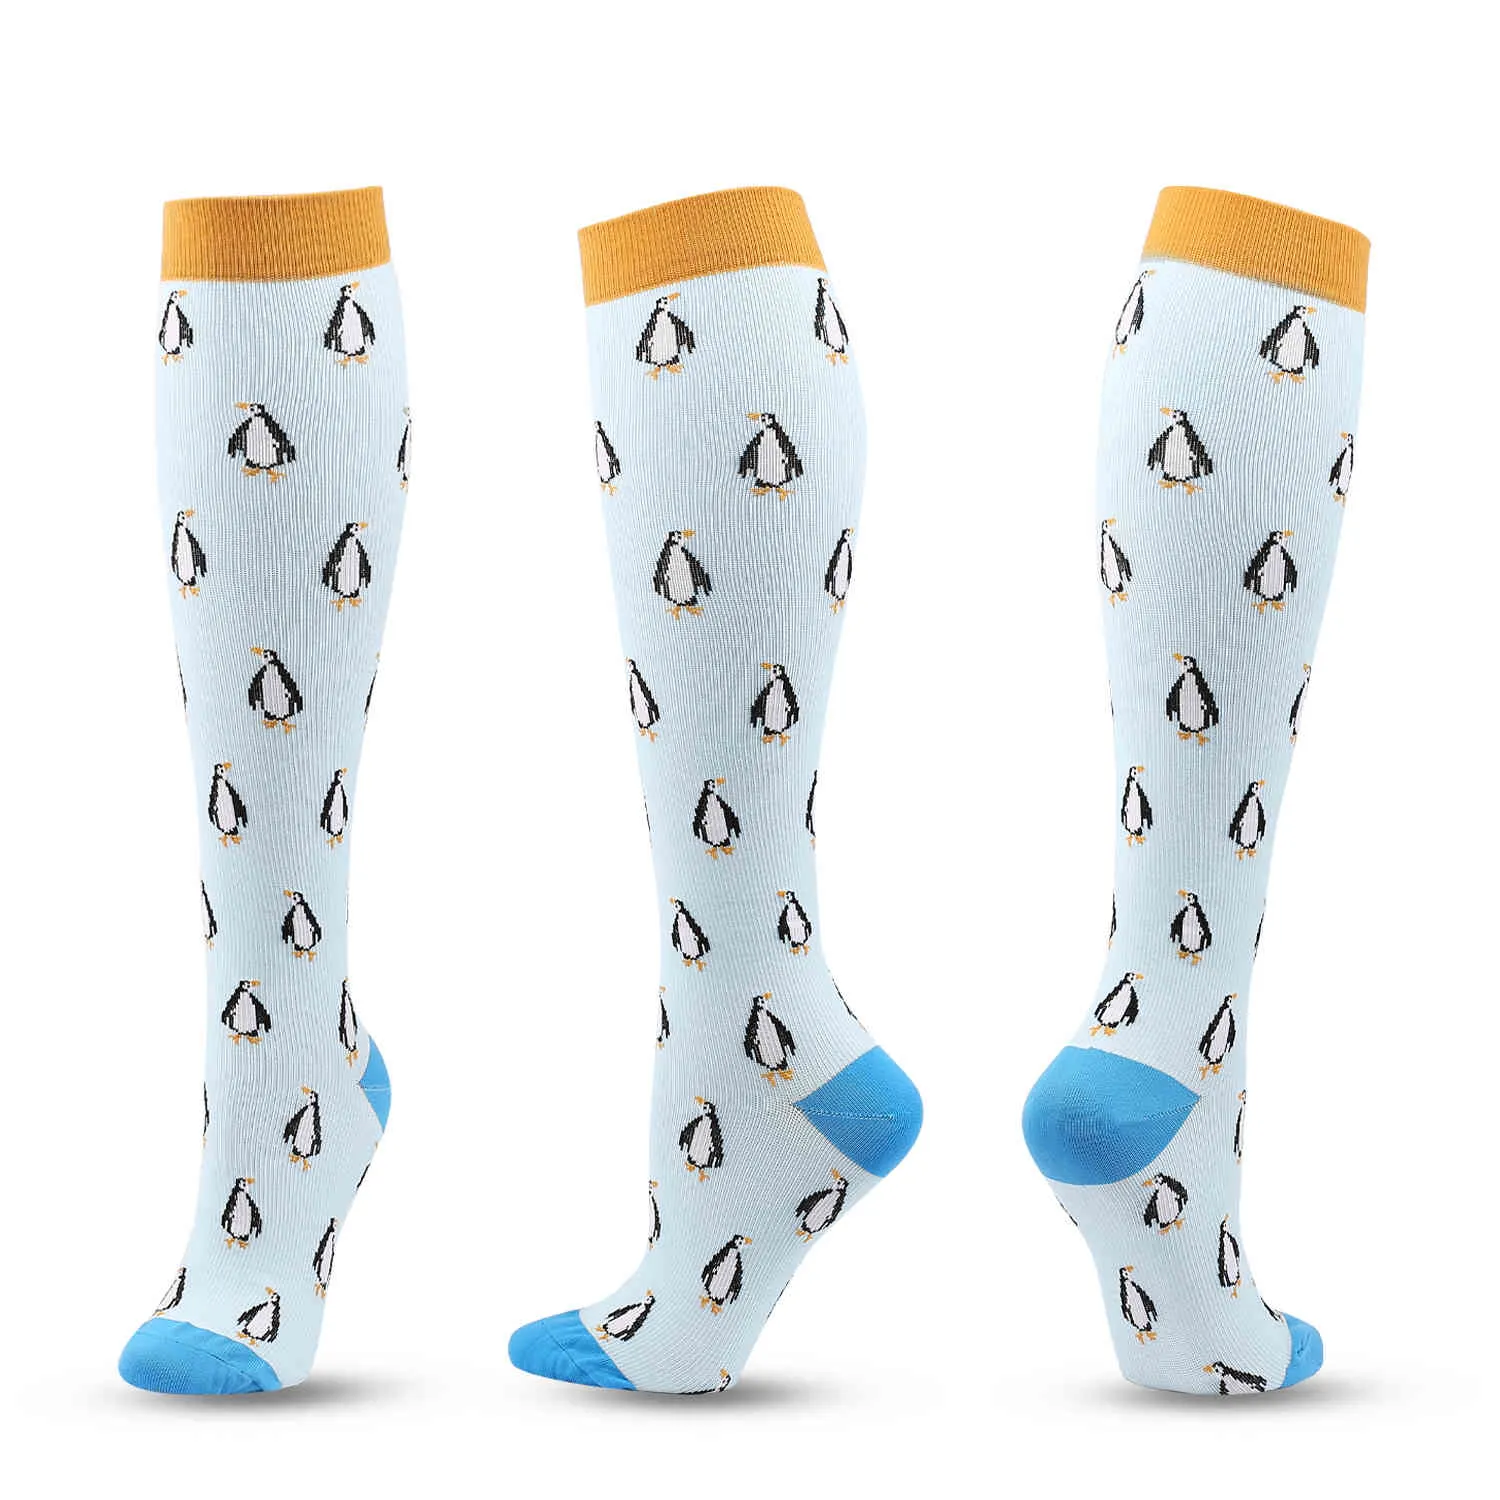 Medias de compresión calcetines de presión para hombres compresa deportes gris claro de color gris claro rayas de pingüino patrón nylon diversión SM2753890